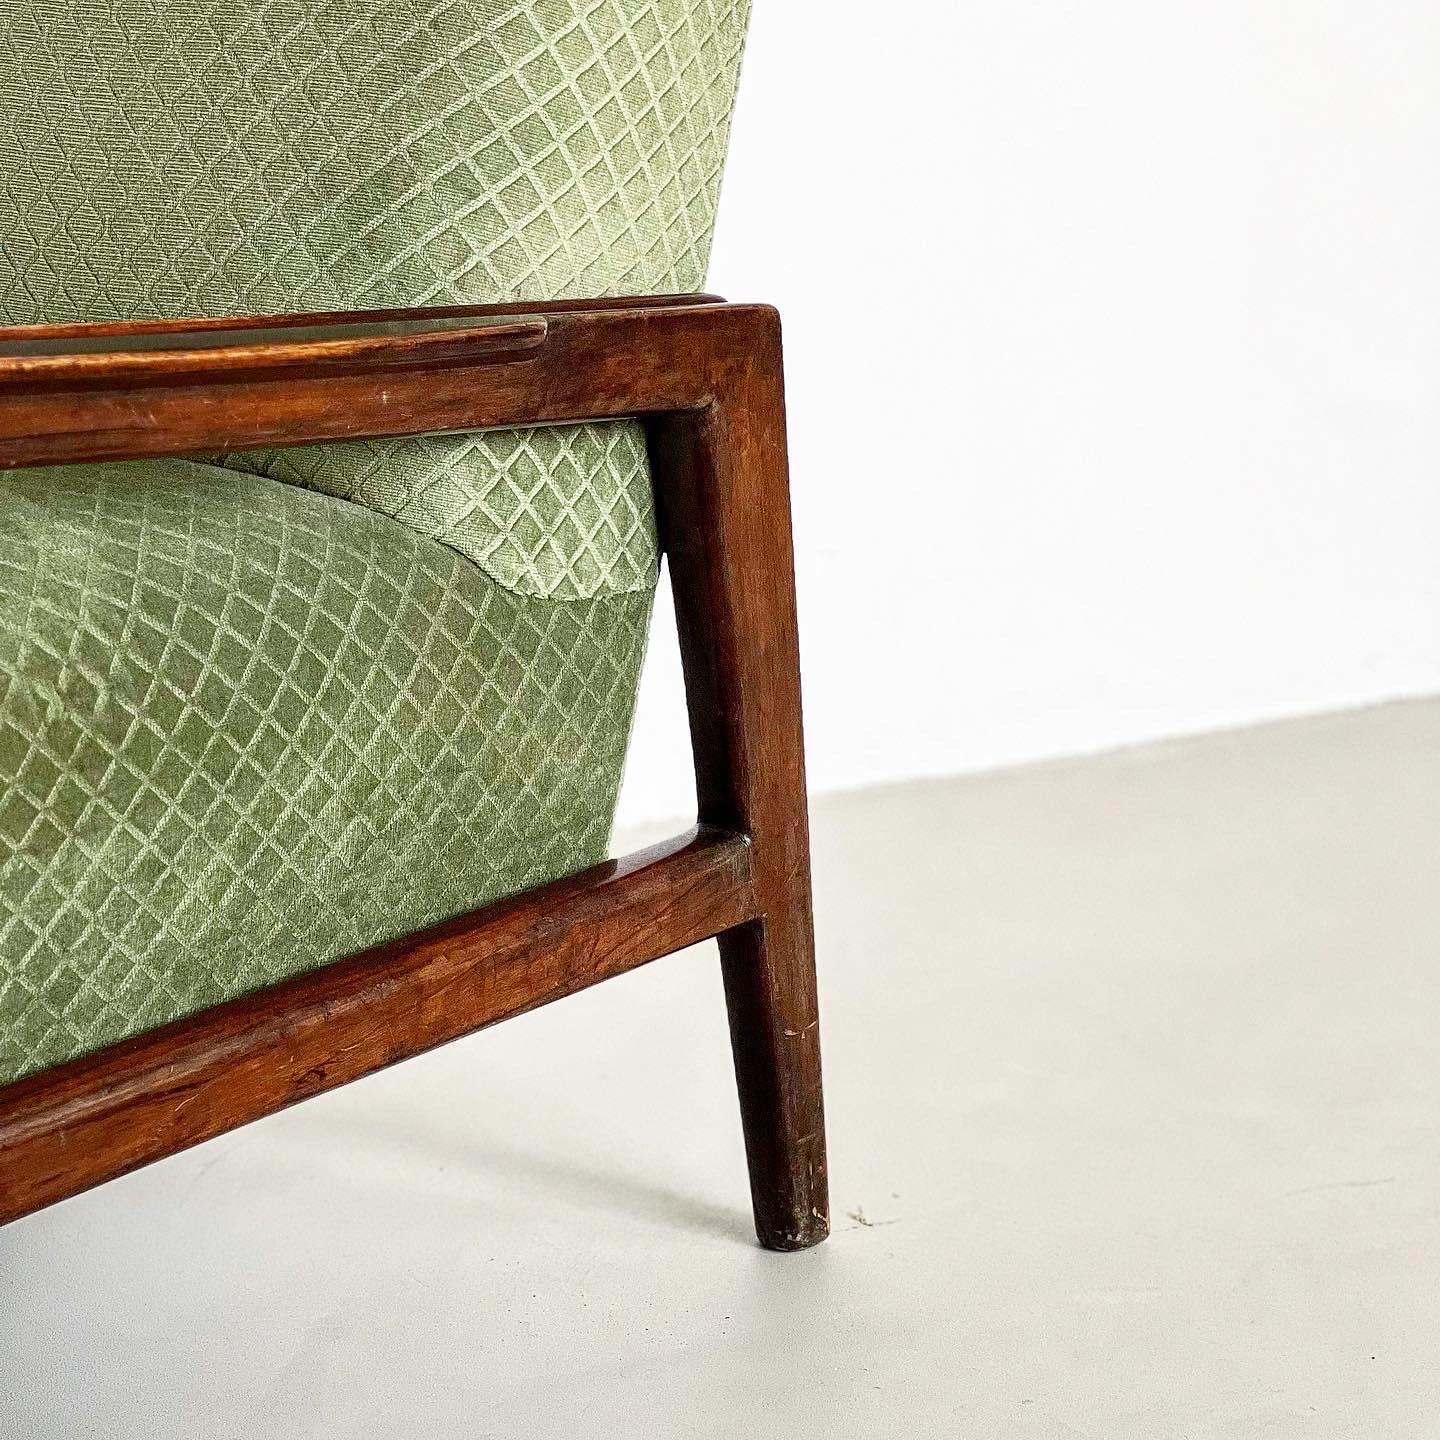 Velvet Set of two Mid Century Modern armchairs in walnut and green velvet upholstery